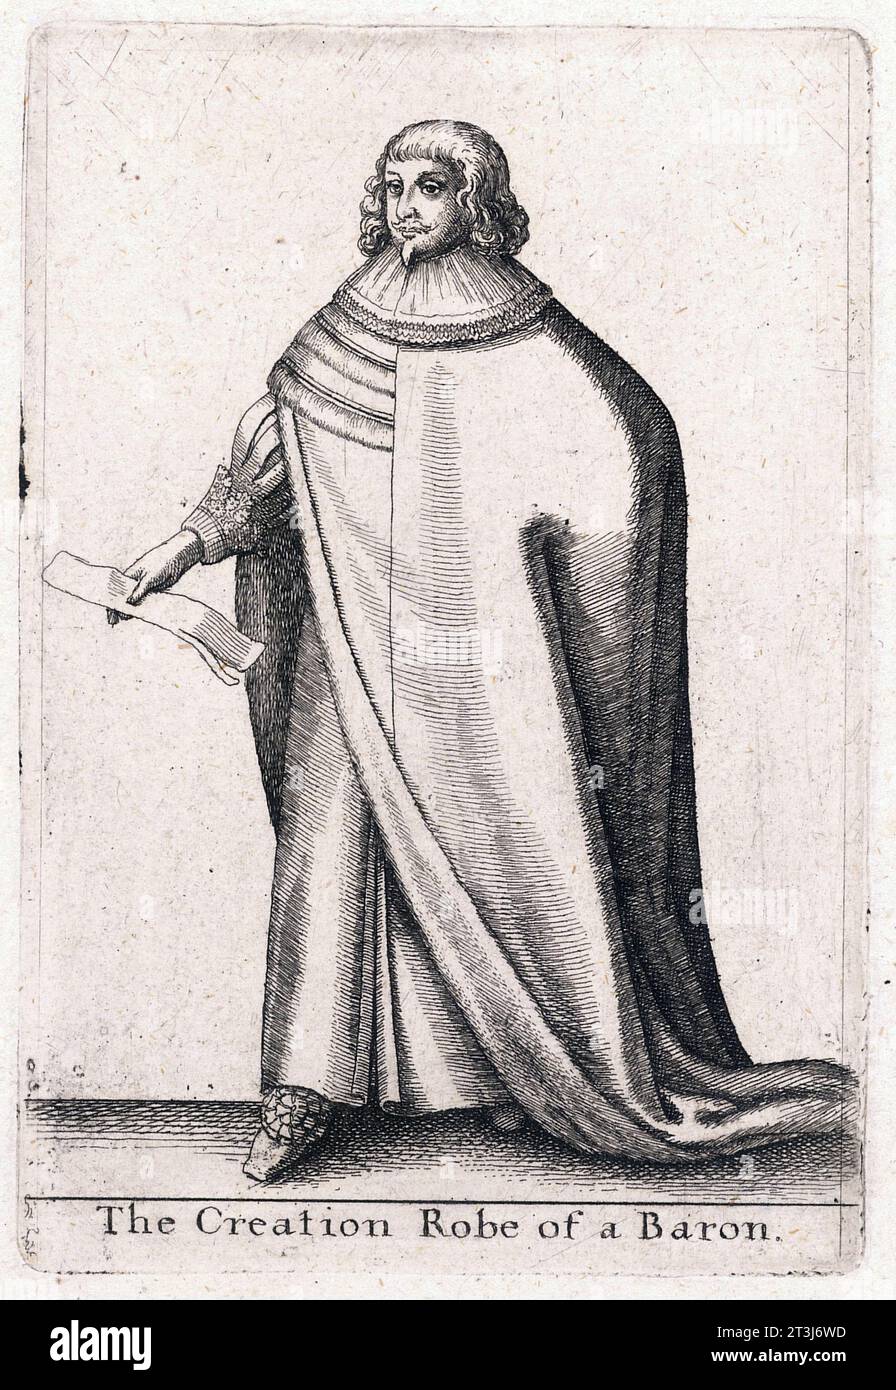 Robe portée par un baron lors de sa cérémonie de création en Grande-Bretagne du 17e siècle, gravée par Venceslas Hollar Banque D'Images